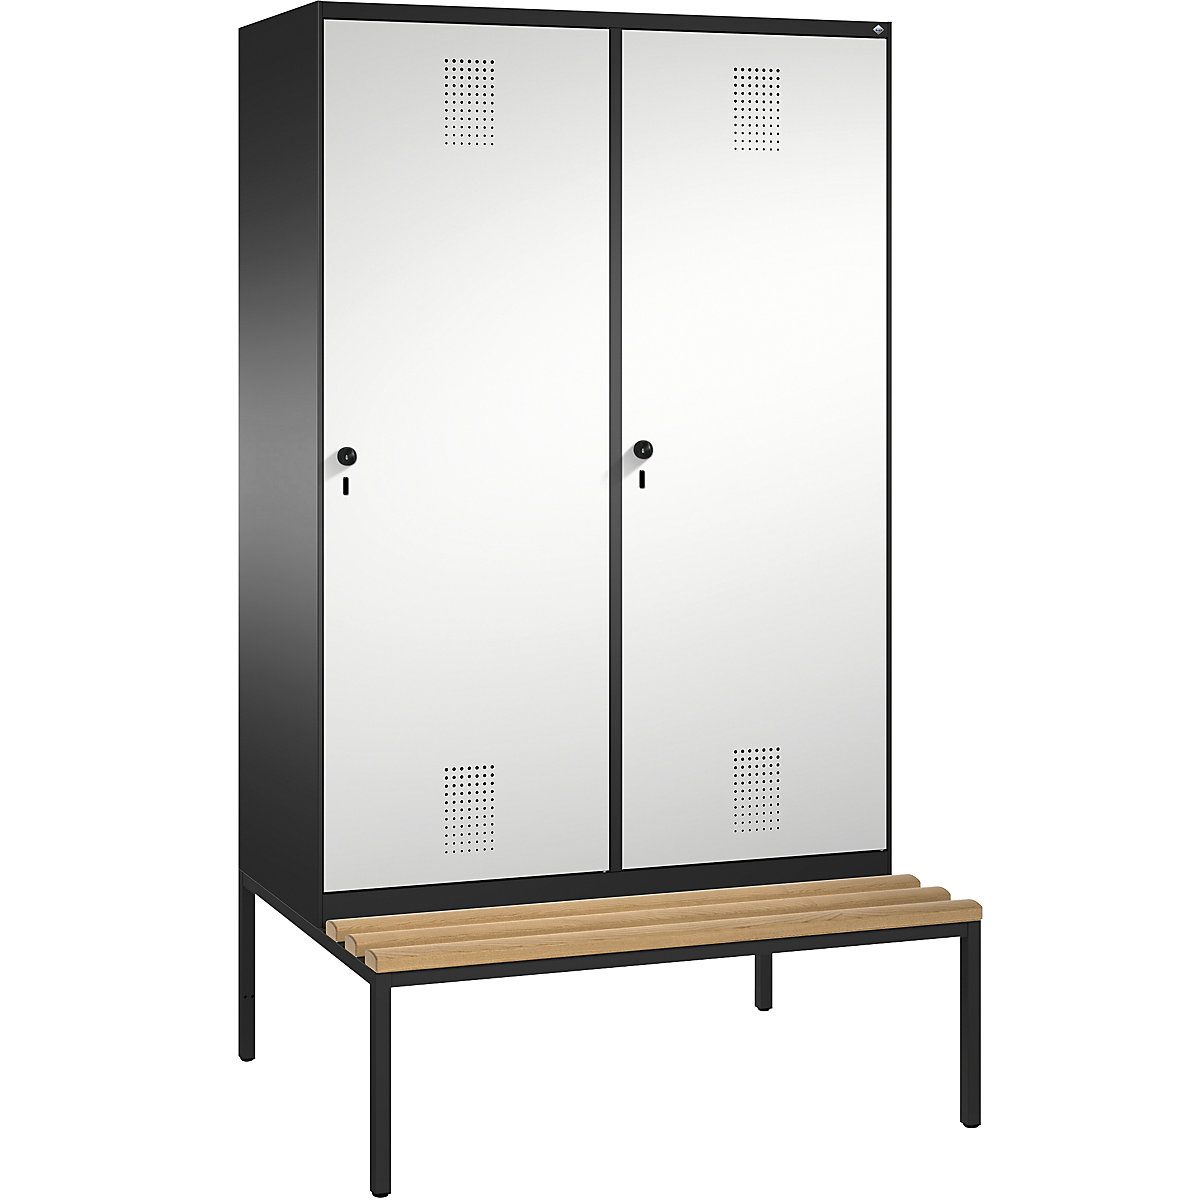 EVOLO cloakroom locker, with bench, door for 2 compartments – C+P, 4 compartments, 2 doors, compartment width 300 mm, black grey / light grey-5